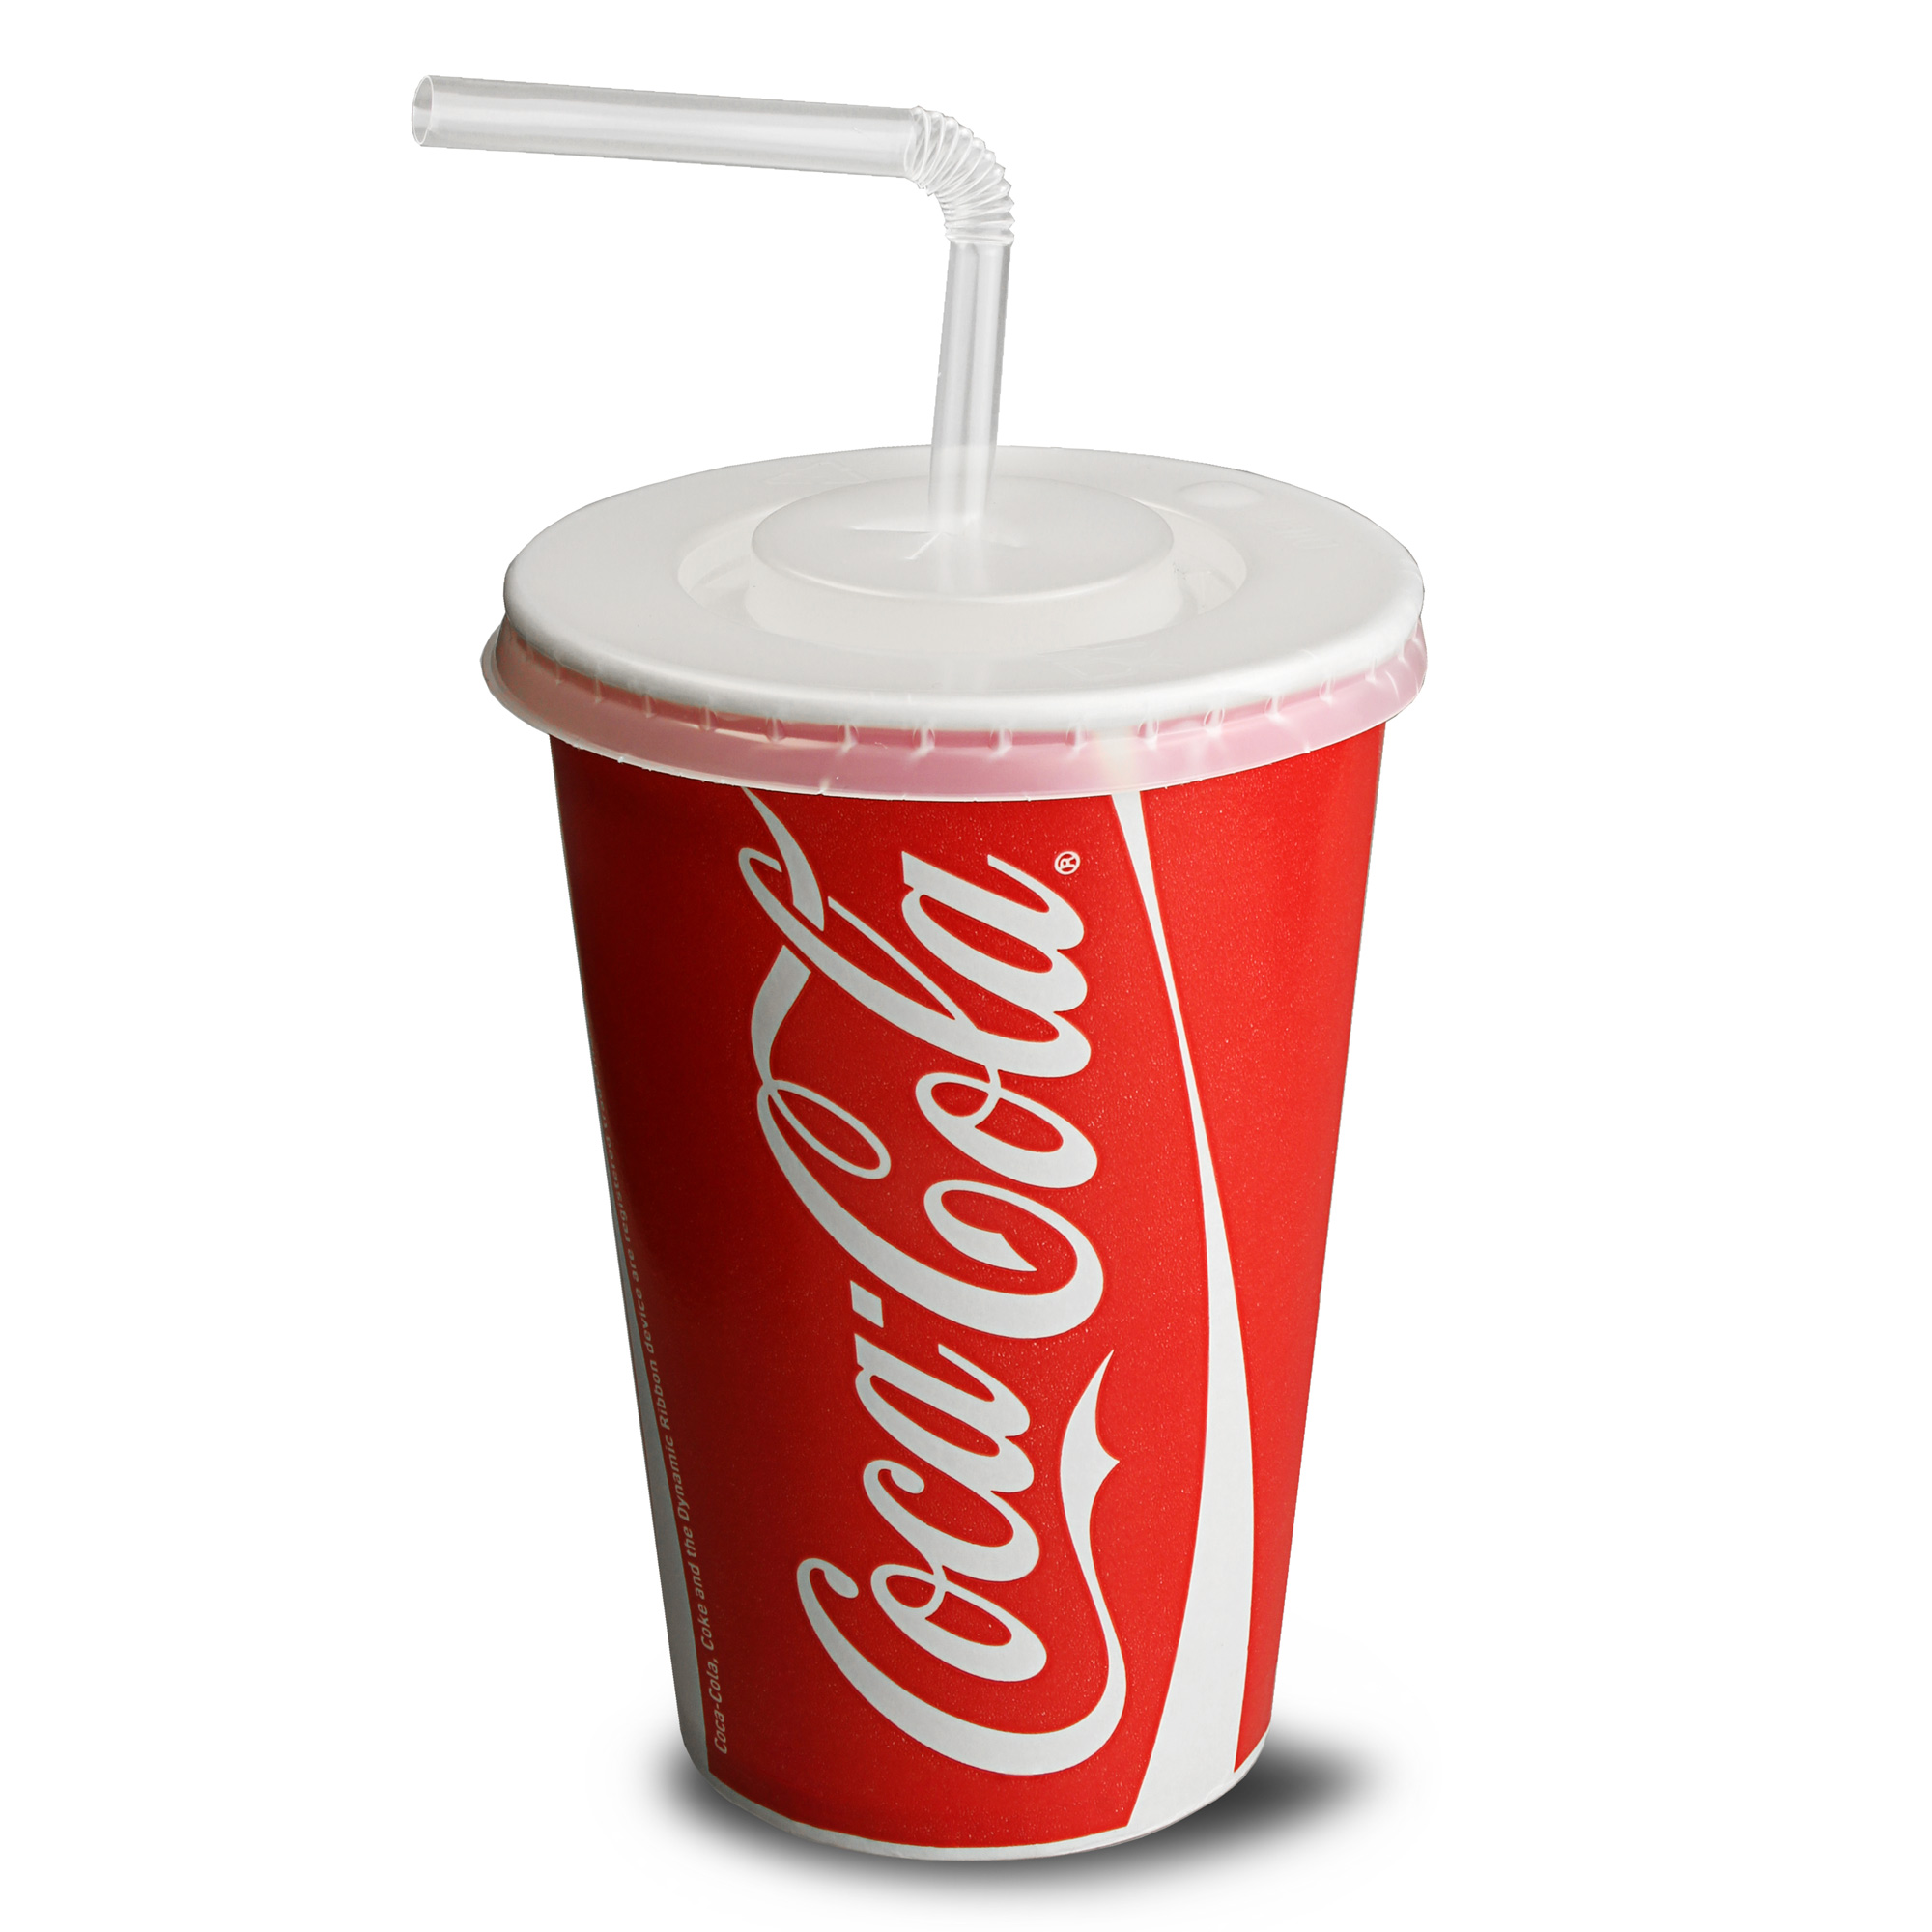 Coca Cola Paper Cups Set 16oz at drinkstuff